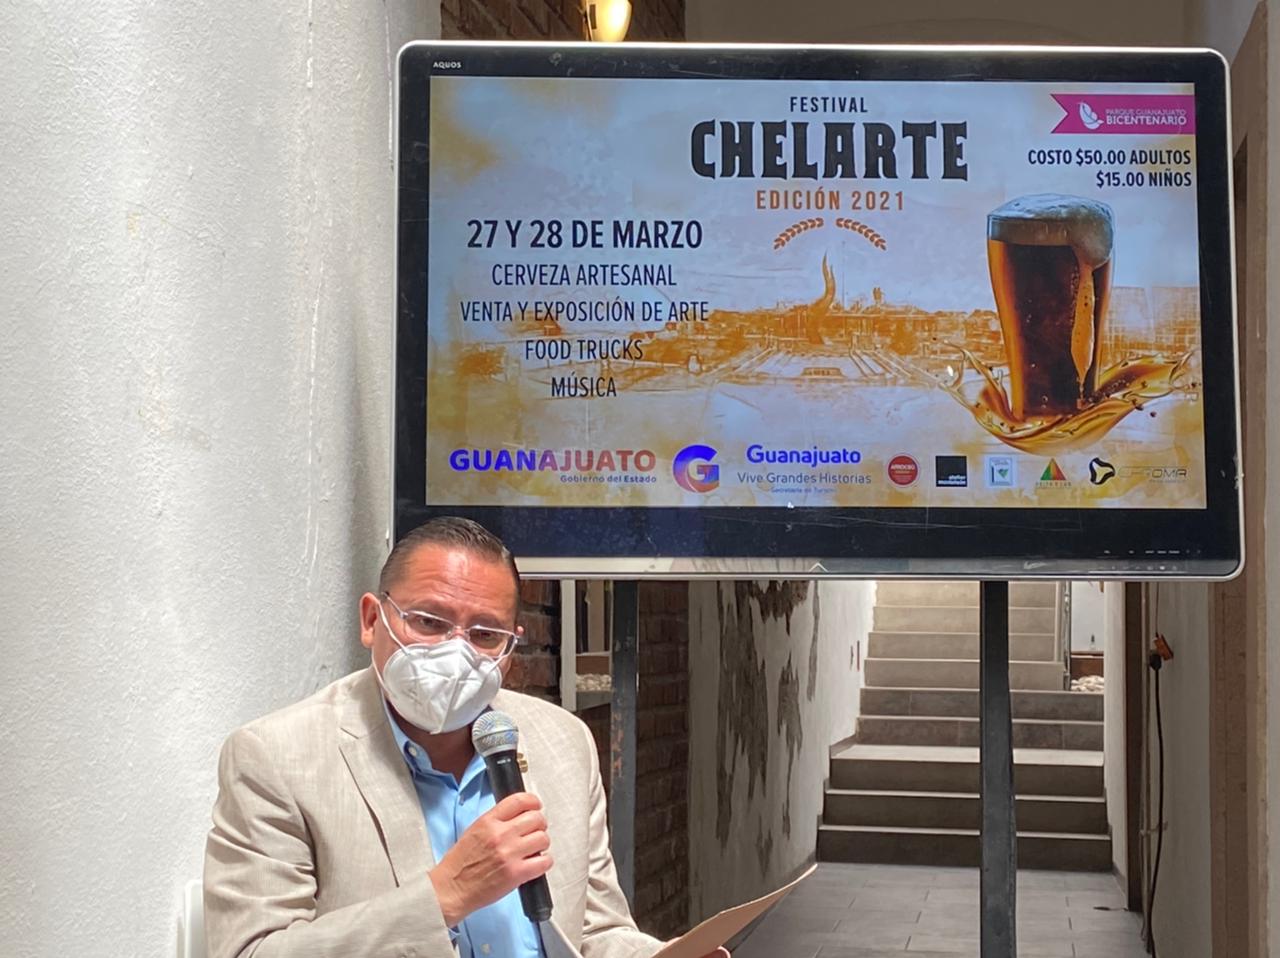 Parque Guanajuato Bicentenario reabre sus puertas con festival de cerveza artesanal